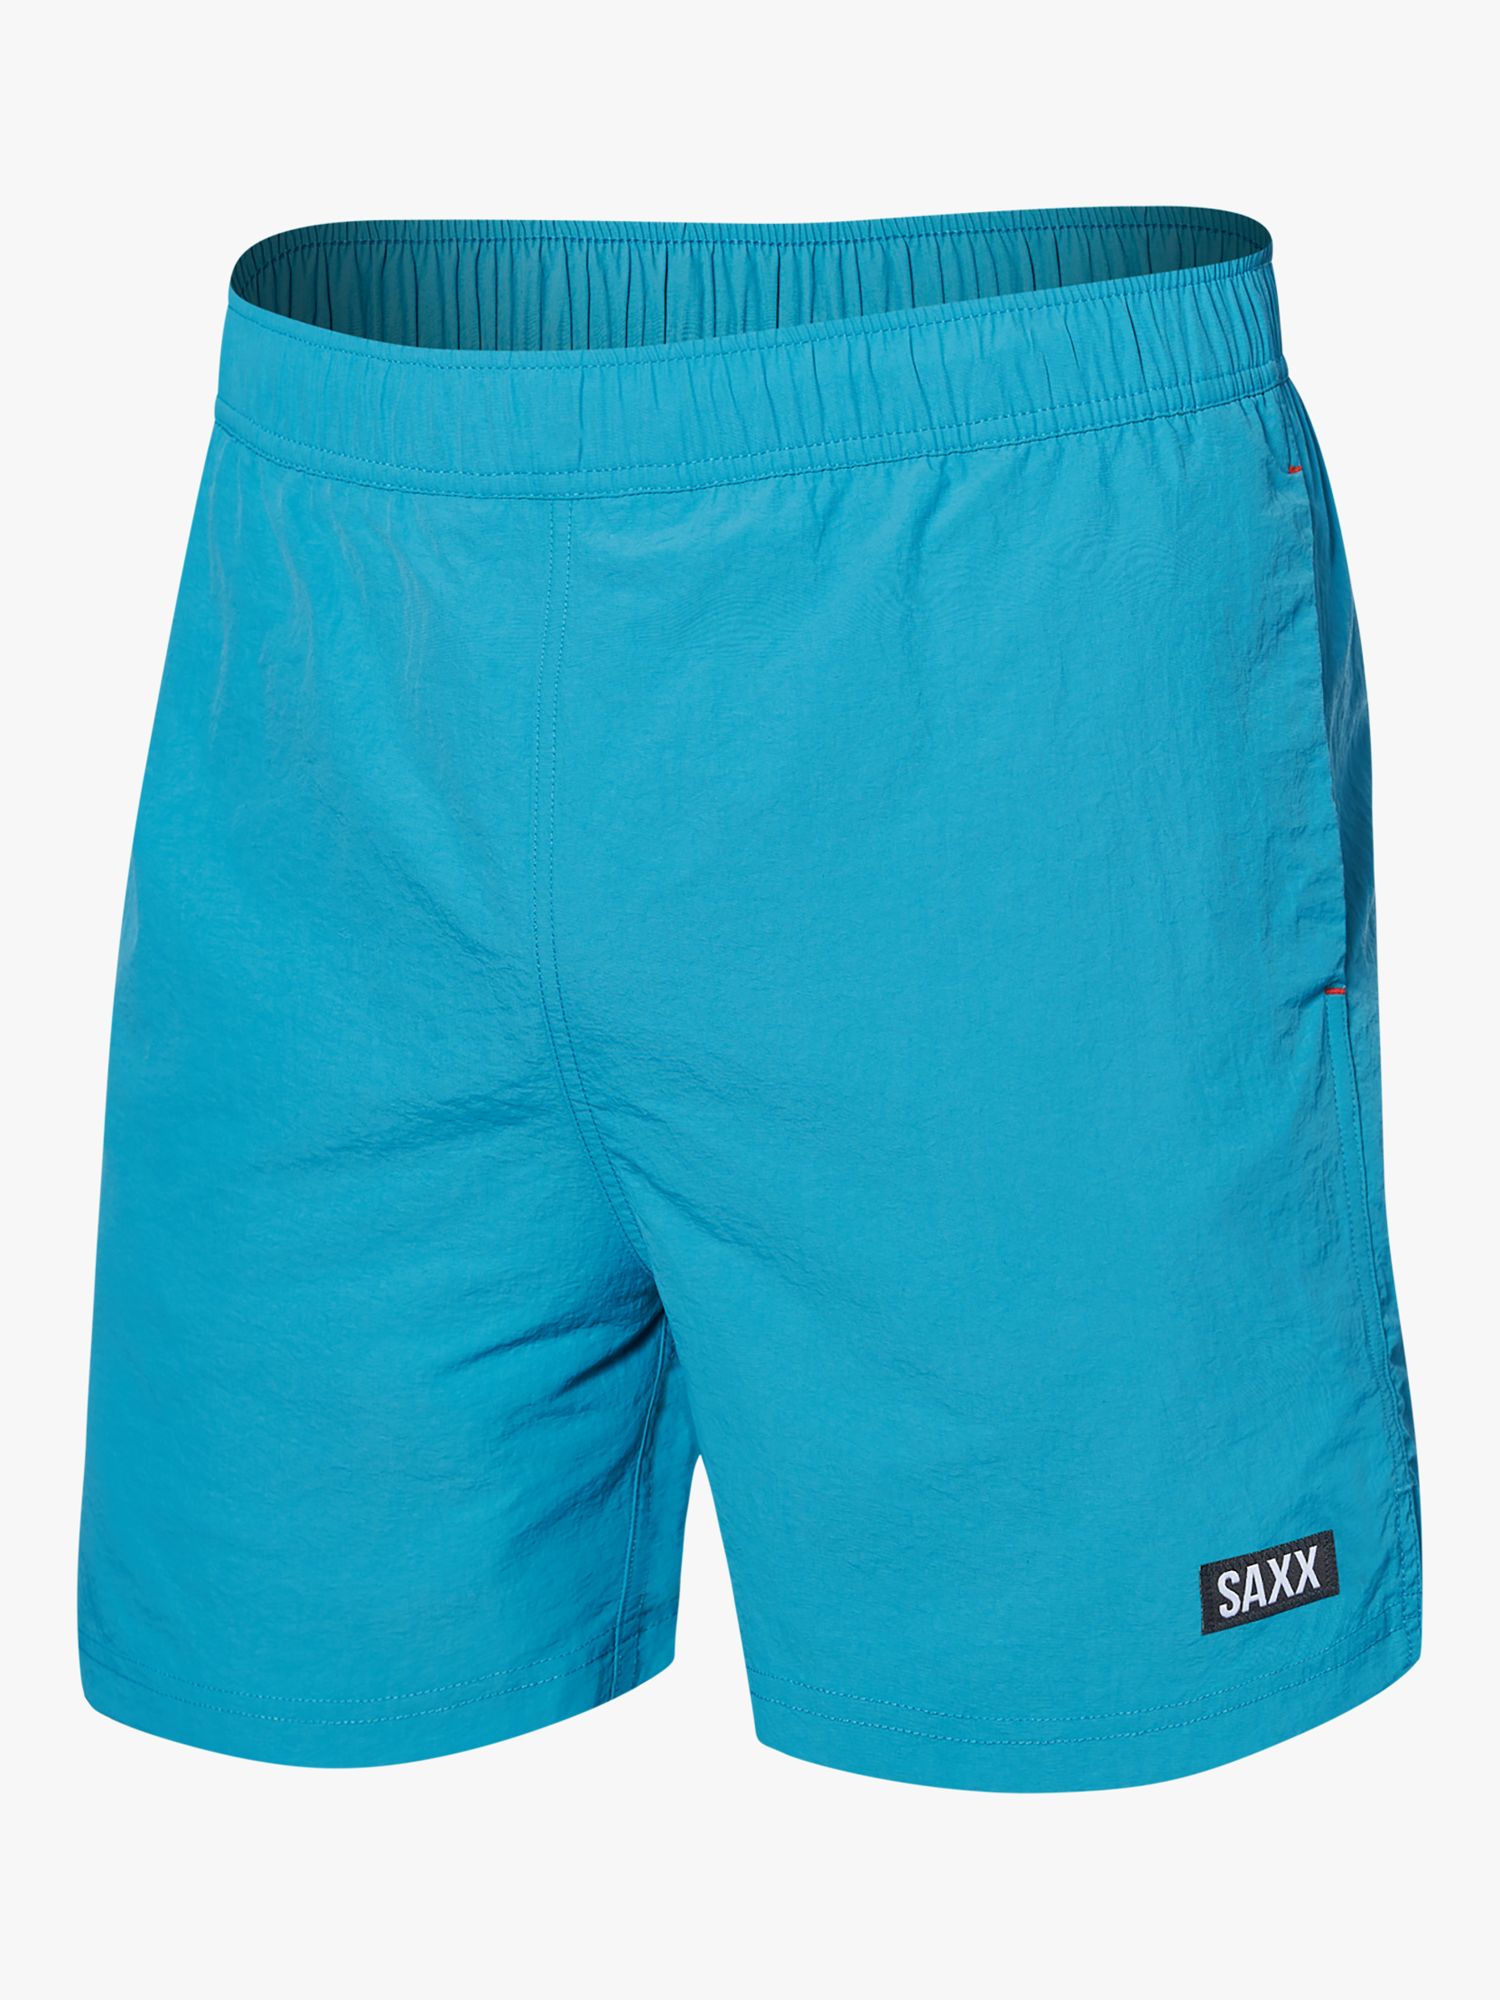 SAXX Go Coastal 2N1 Volley Swim Shorts, Blue, S